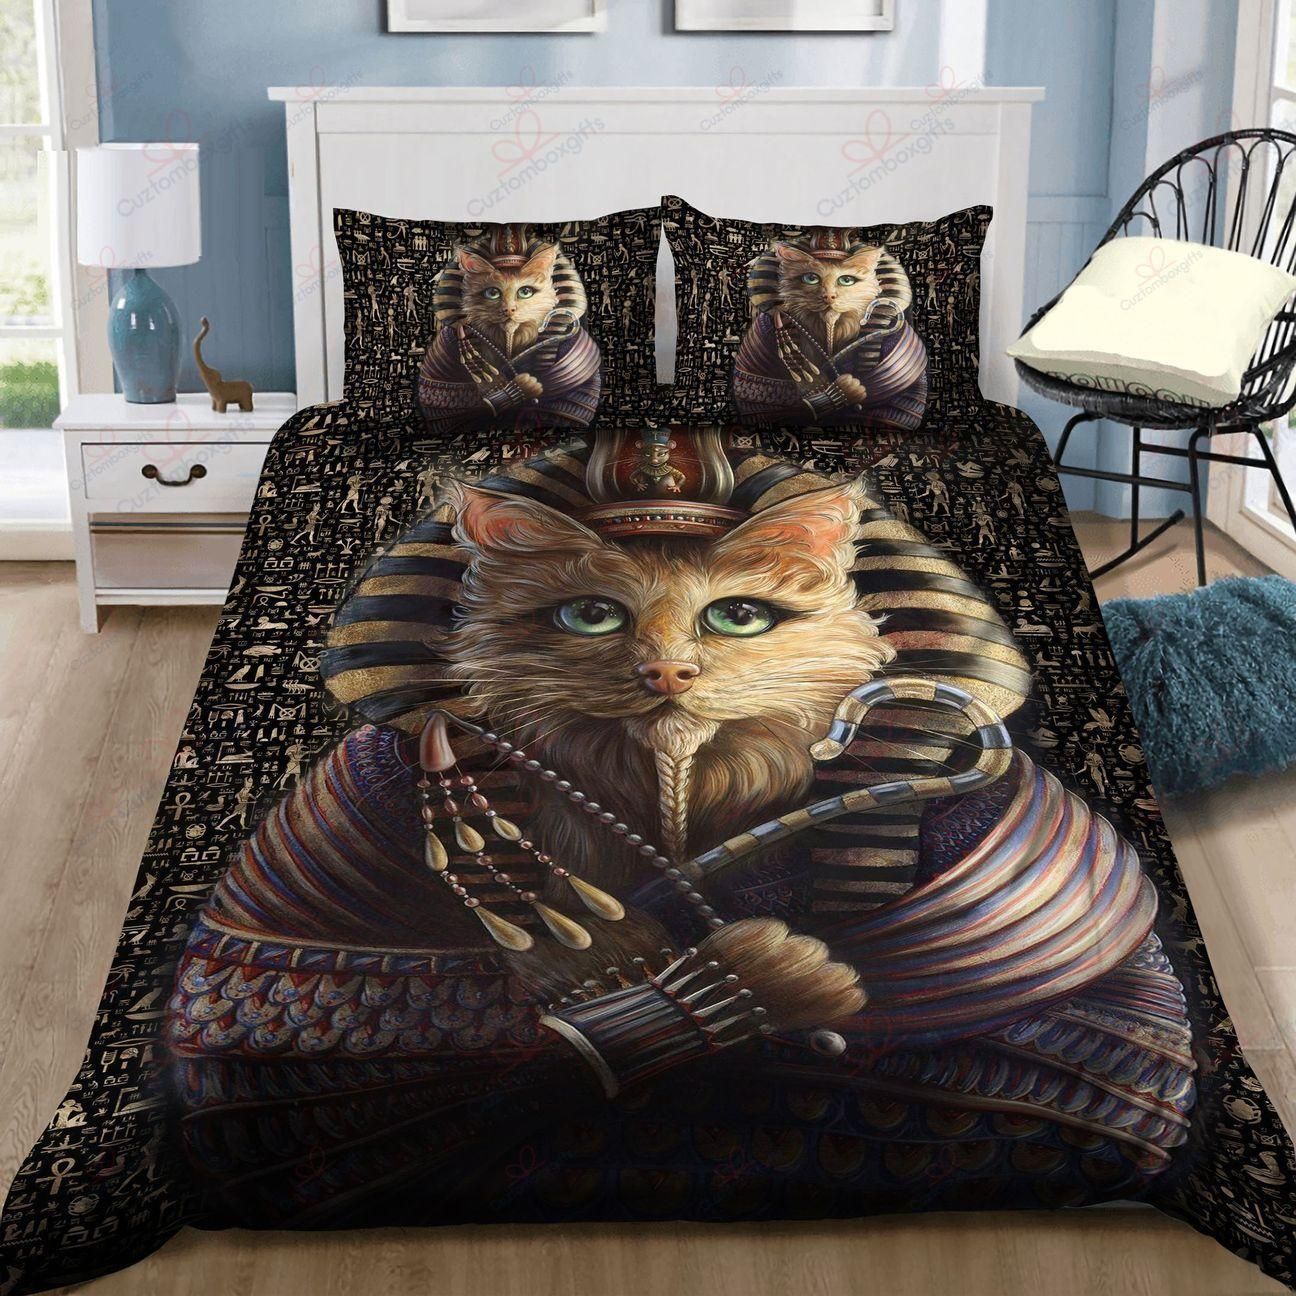 Cat King Of Egypt Bedding Comforter Set Duvet Cover Bedding Set